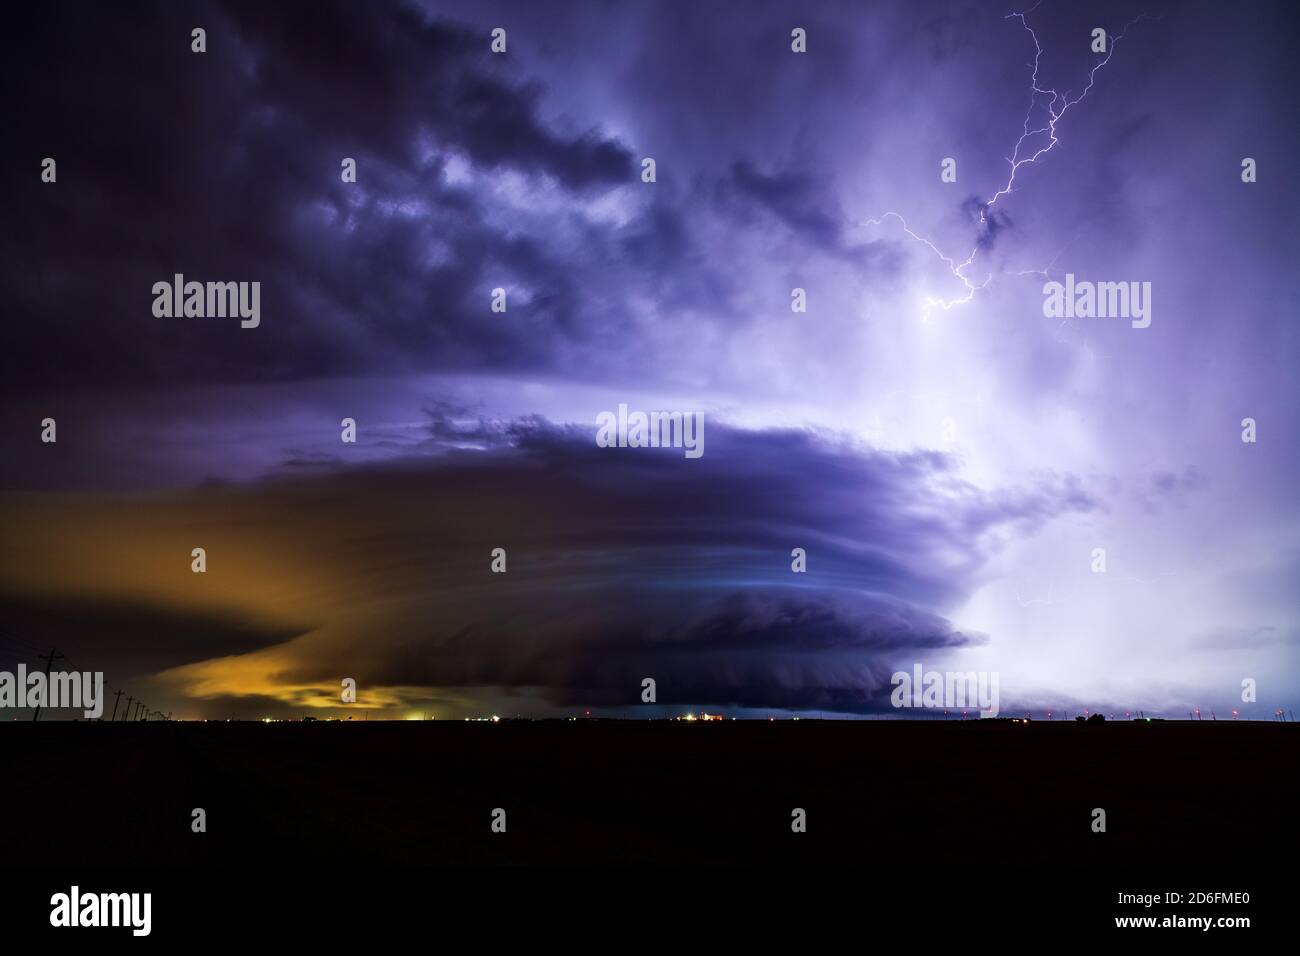 Ein Blitz erhellt ein supercell-Gewitter mit dramatischen Sturmwolken während eines Unwetterereignisses über Dodge City, Kansas Stockfoto